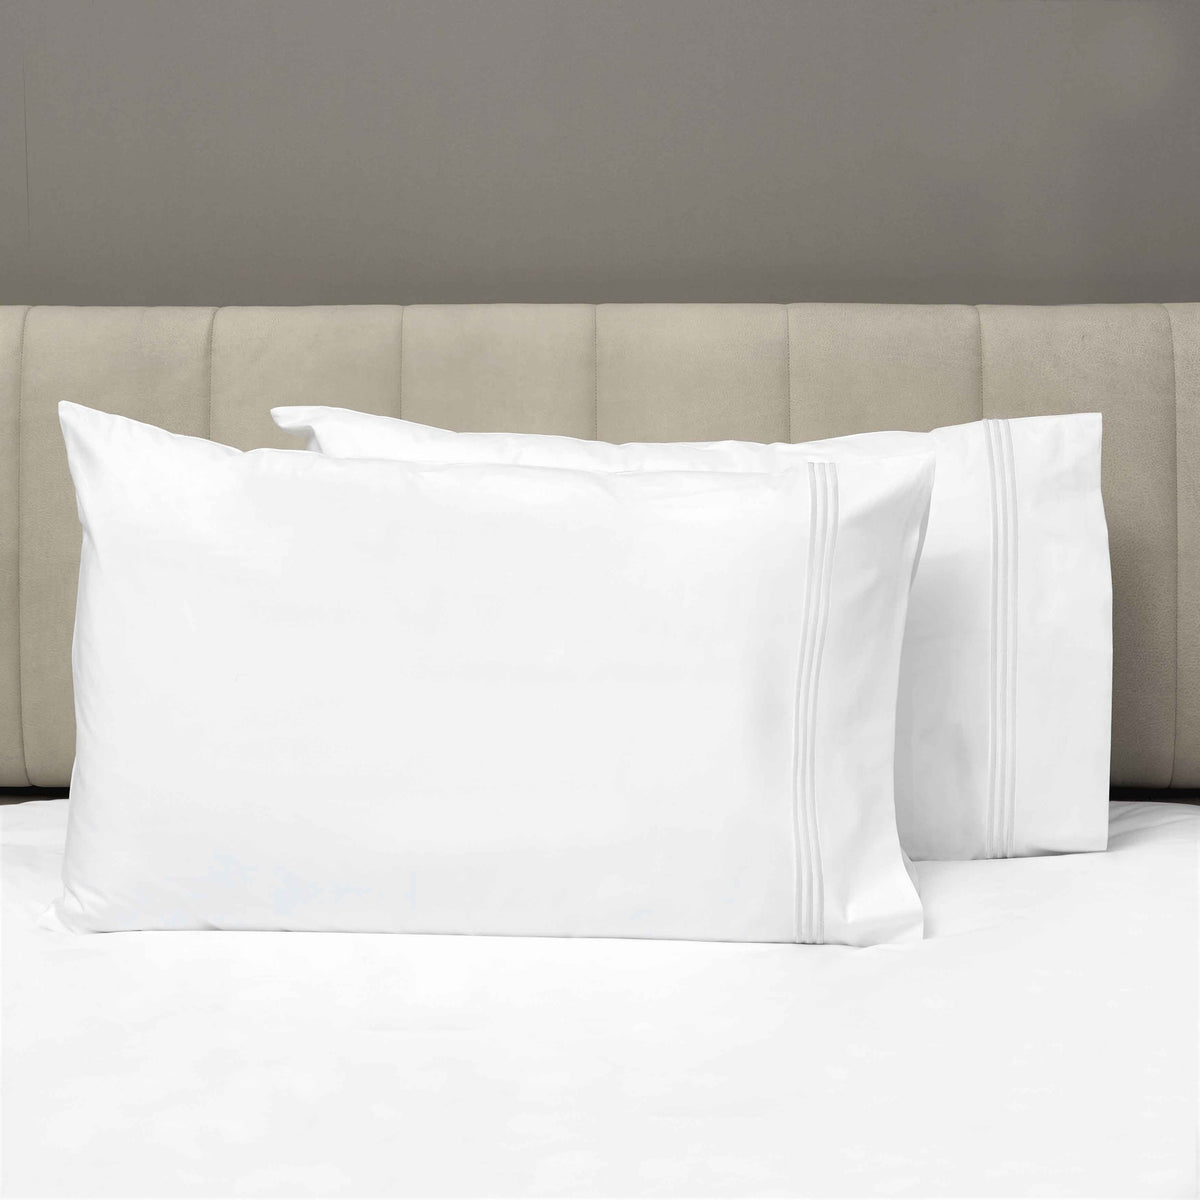 Pair of Pillowcases of Signoria Platinum Percale Bedding in White/White Color